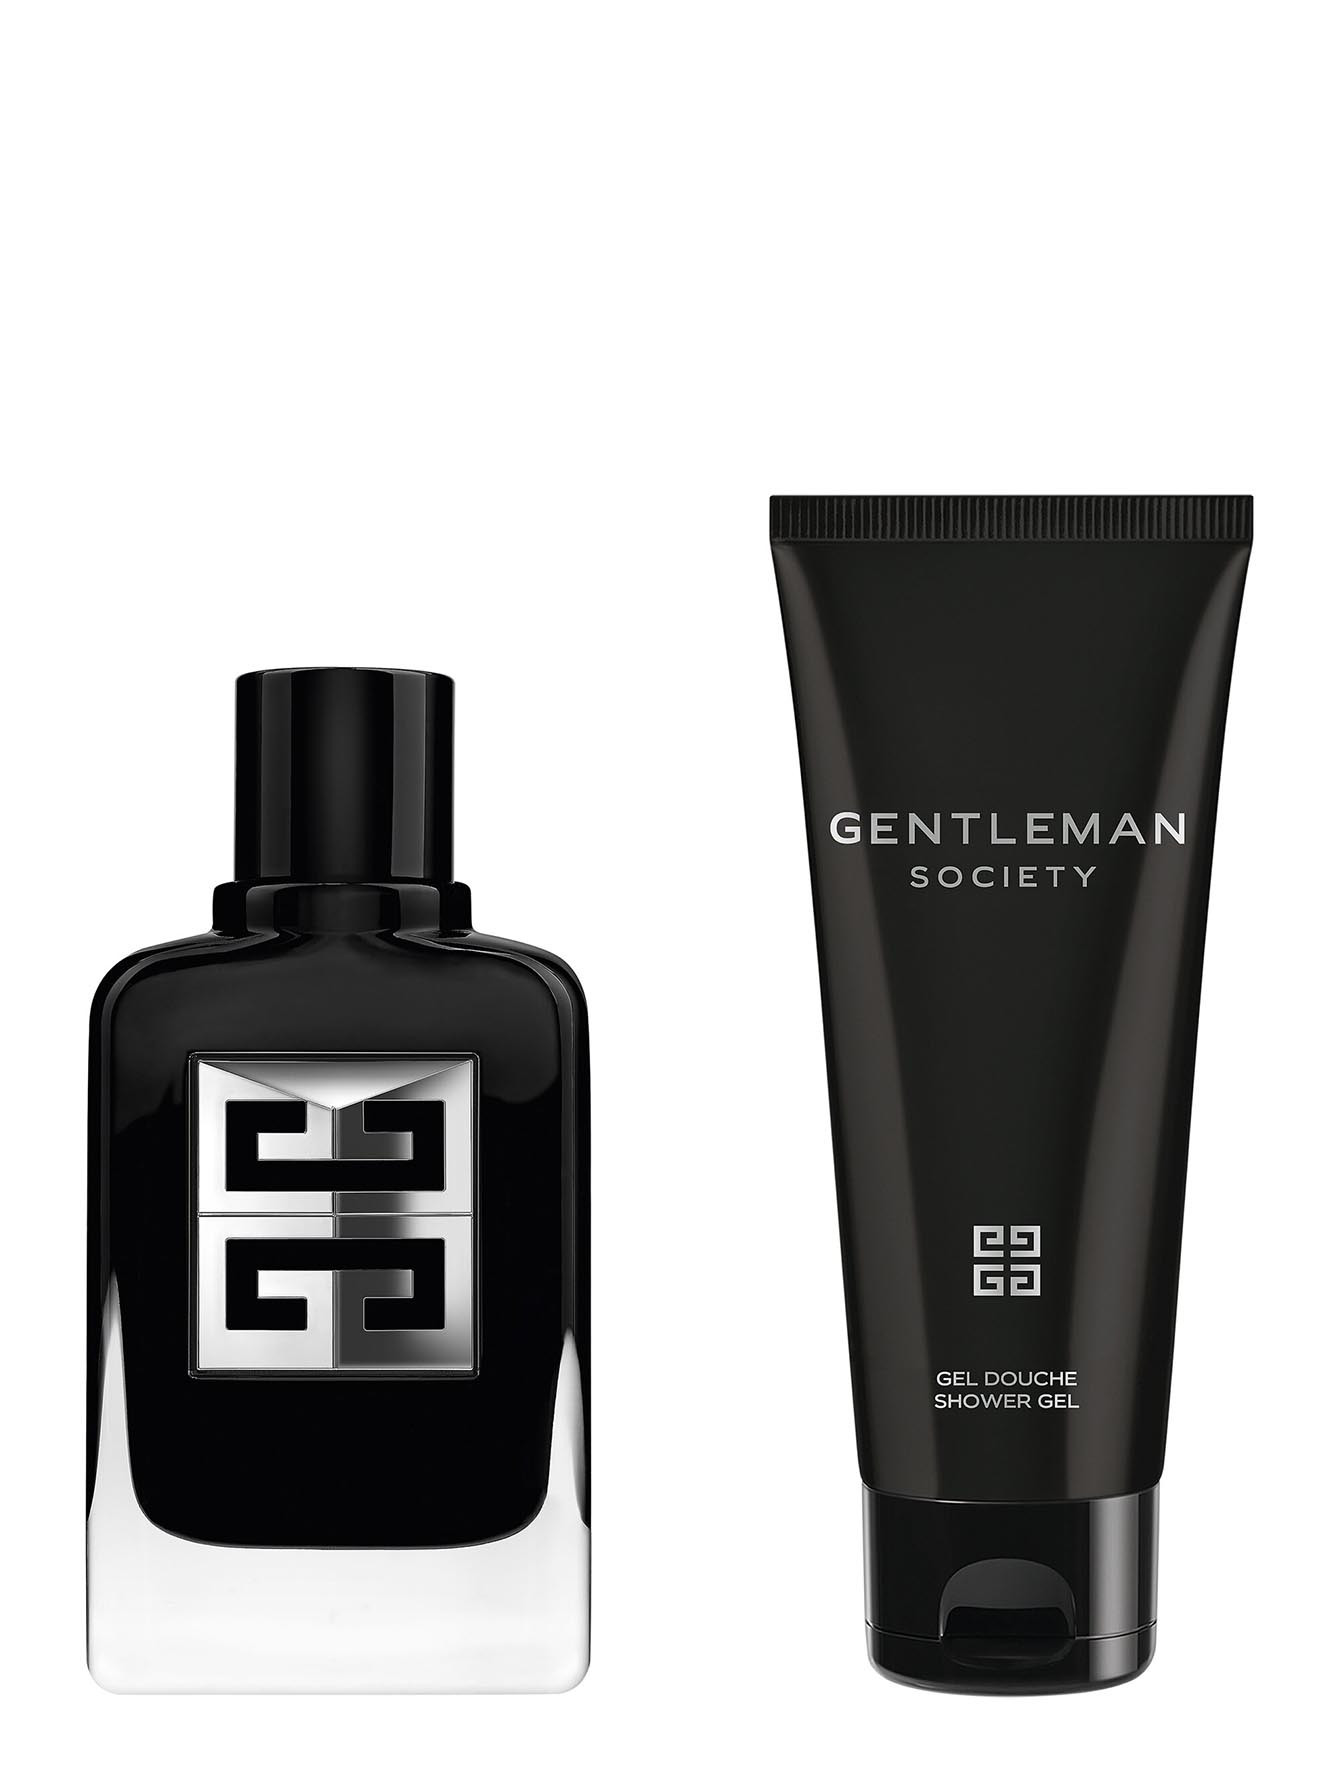 Мужской подарочный набор Givenchy Gentleman Society - Общий вид